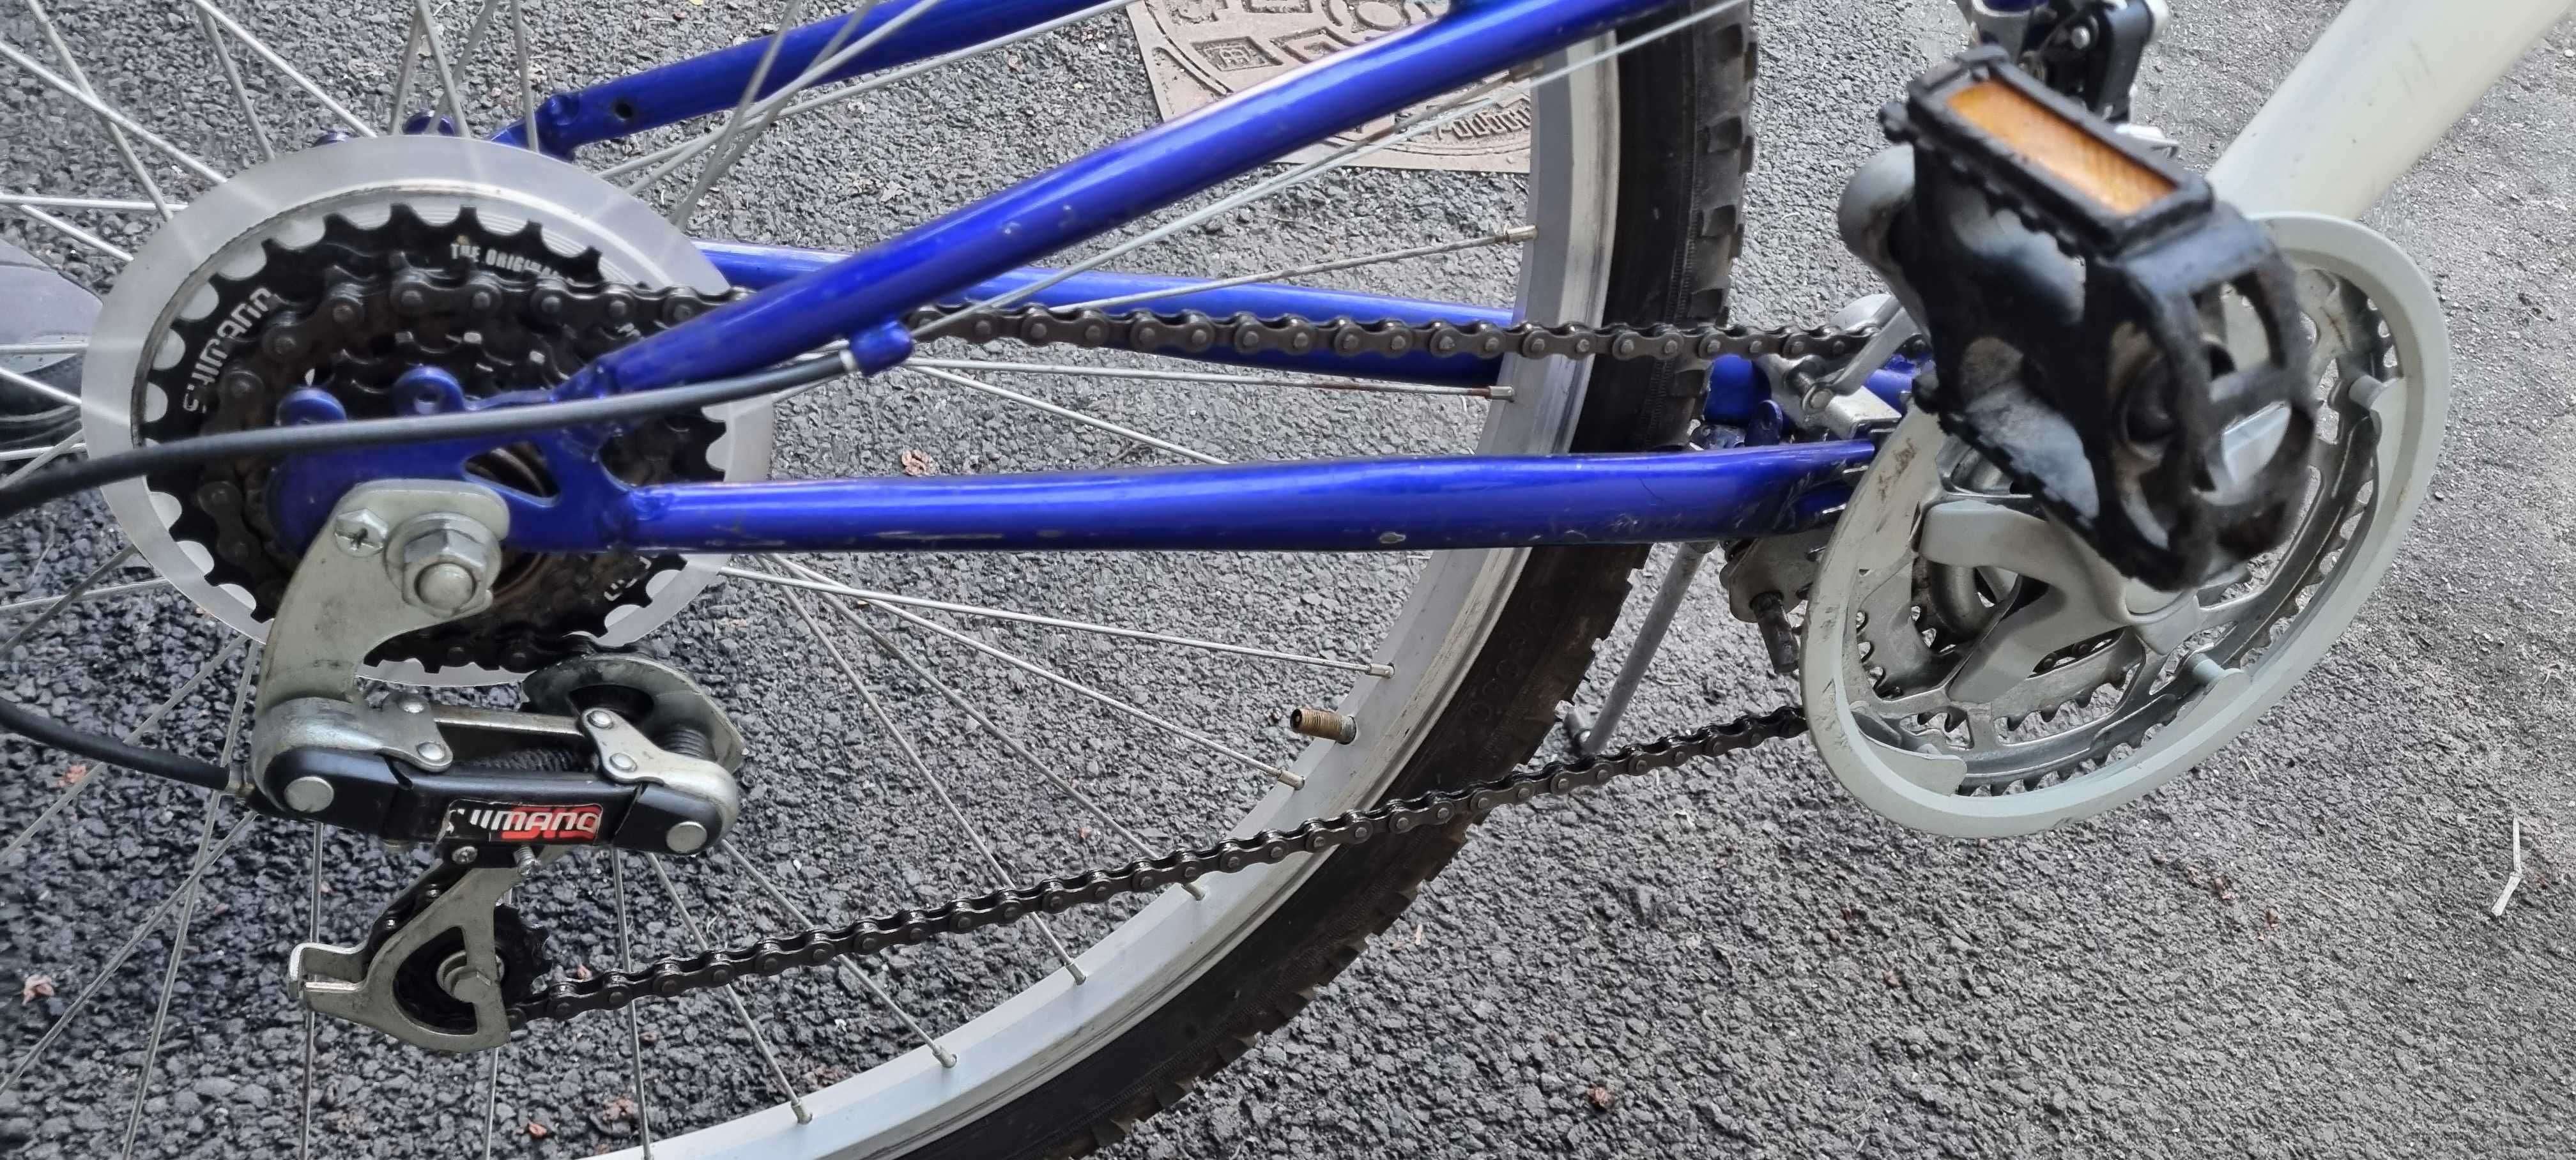 Bicicleta 26 inch full suspension aproape noua Shimano